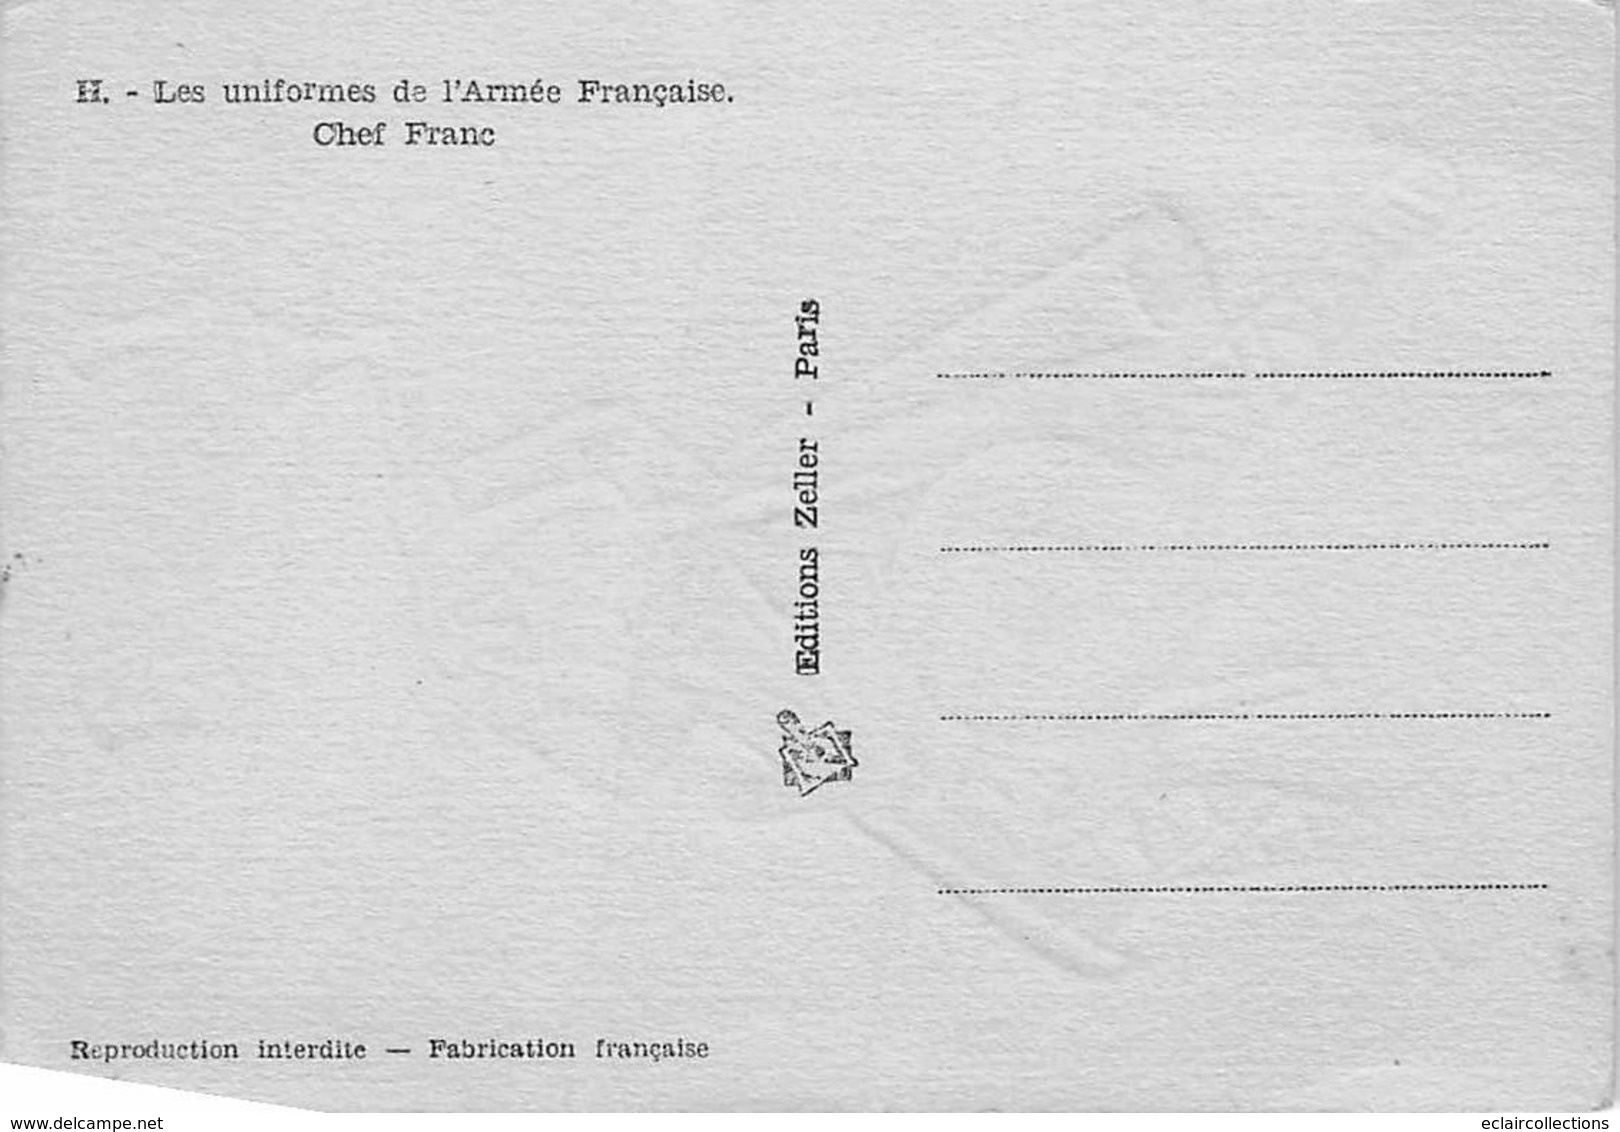 Thème Illustrateur Kermorver . Lot de 10  cartes: Uniformes de l'Infanterie Française      (voir scan)